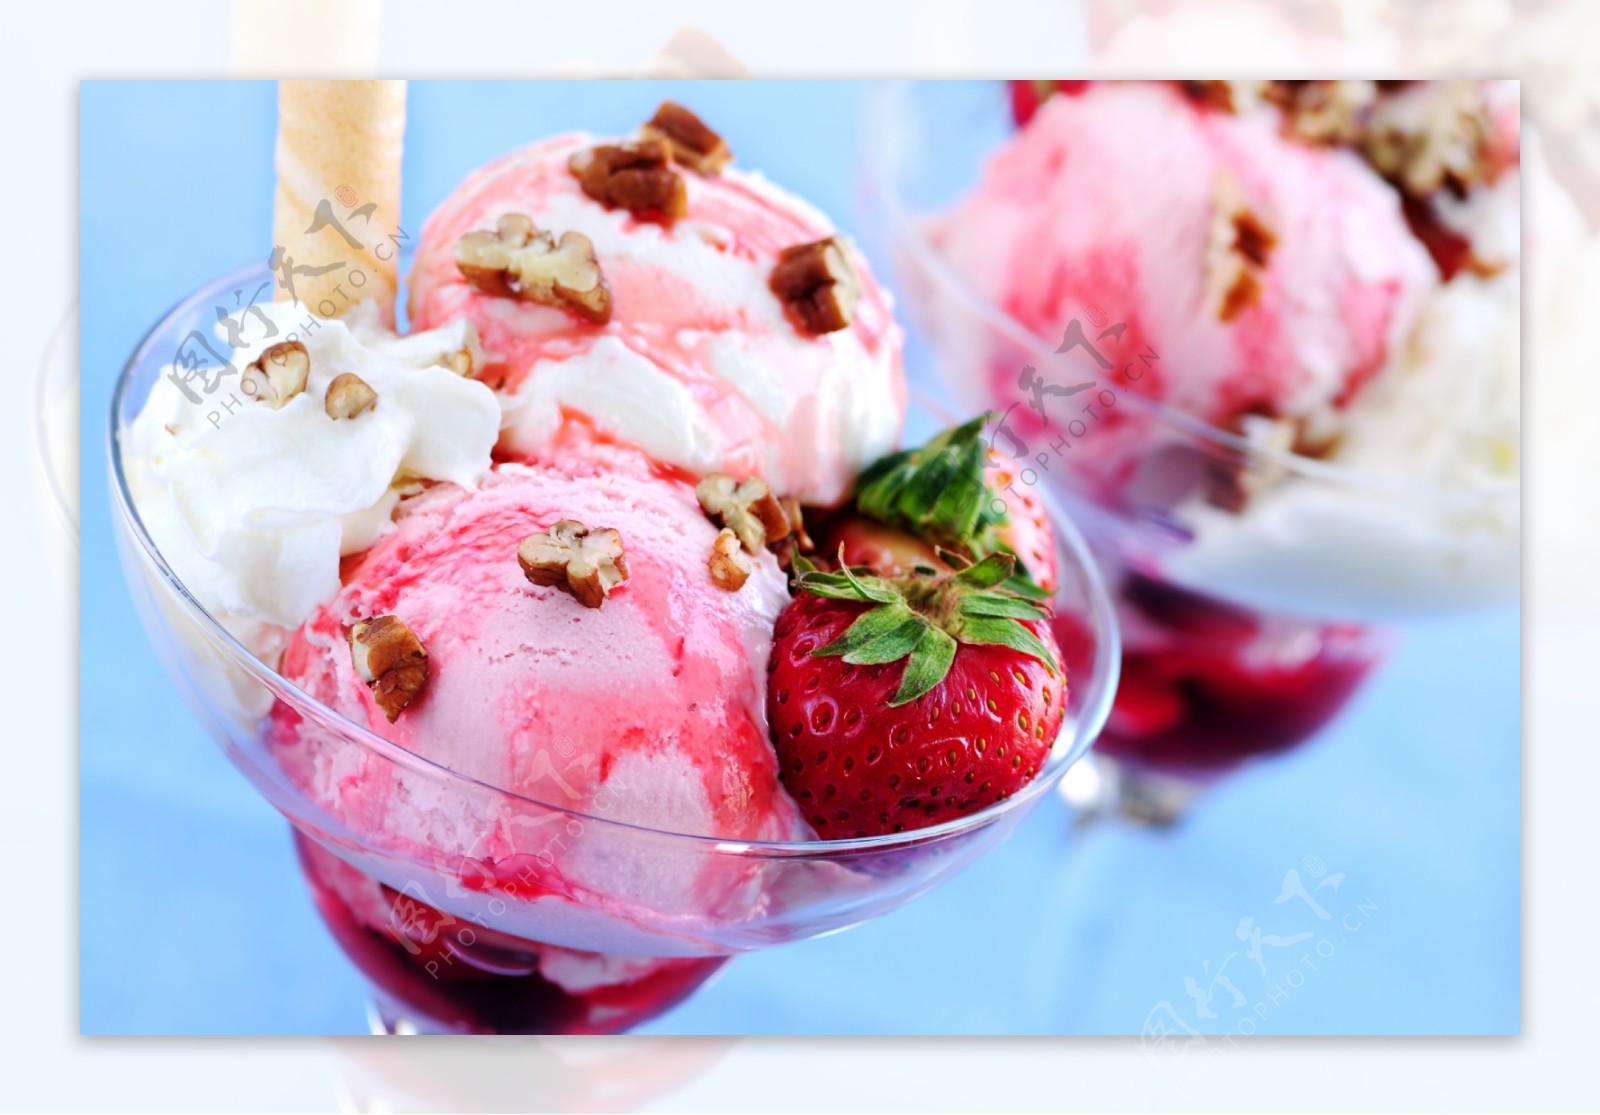 草莓奶油冰激凌图片